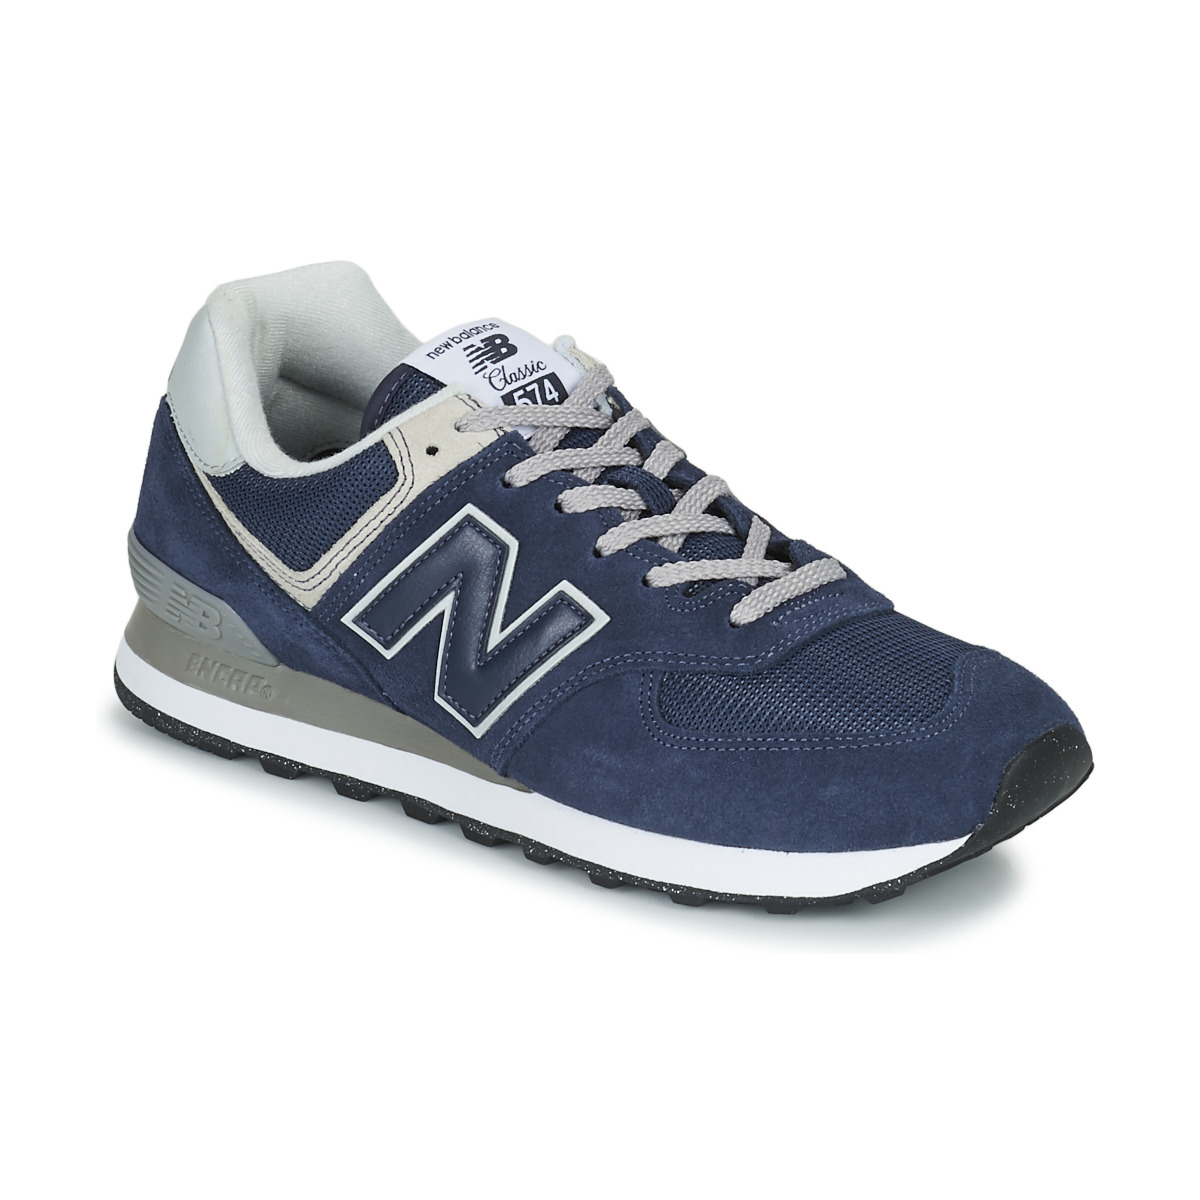 New Balance 480 Shoes - White/Marine Blue